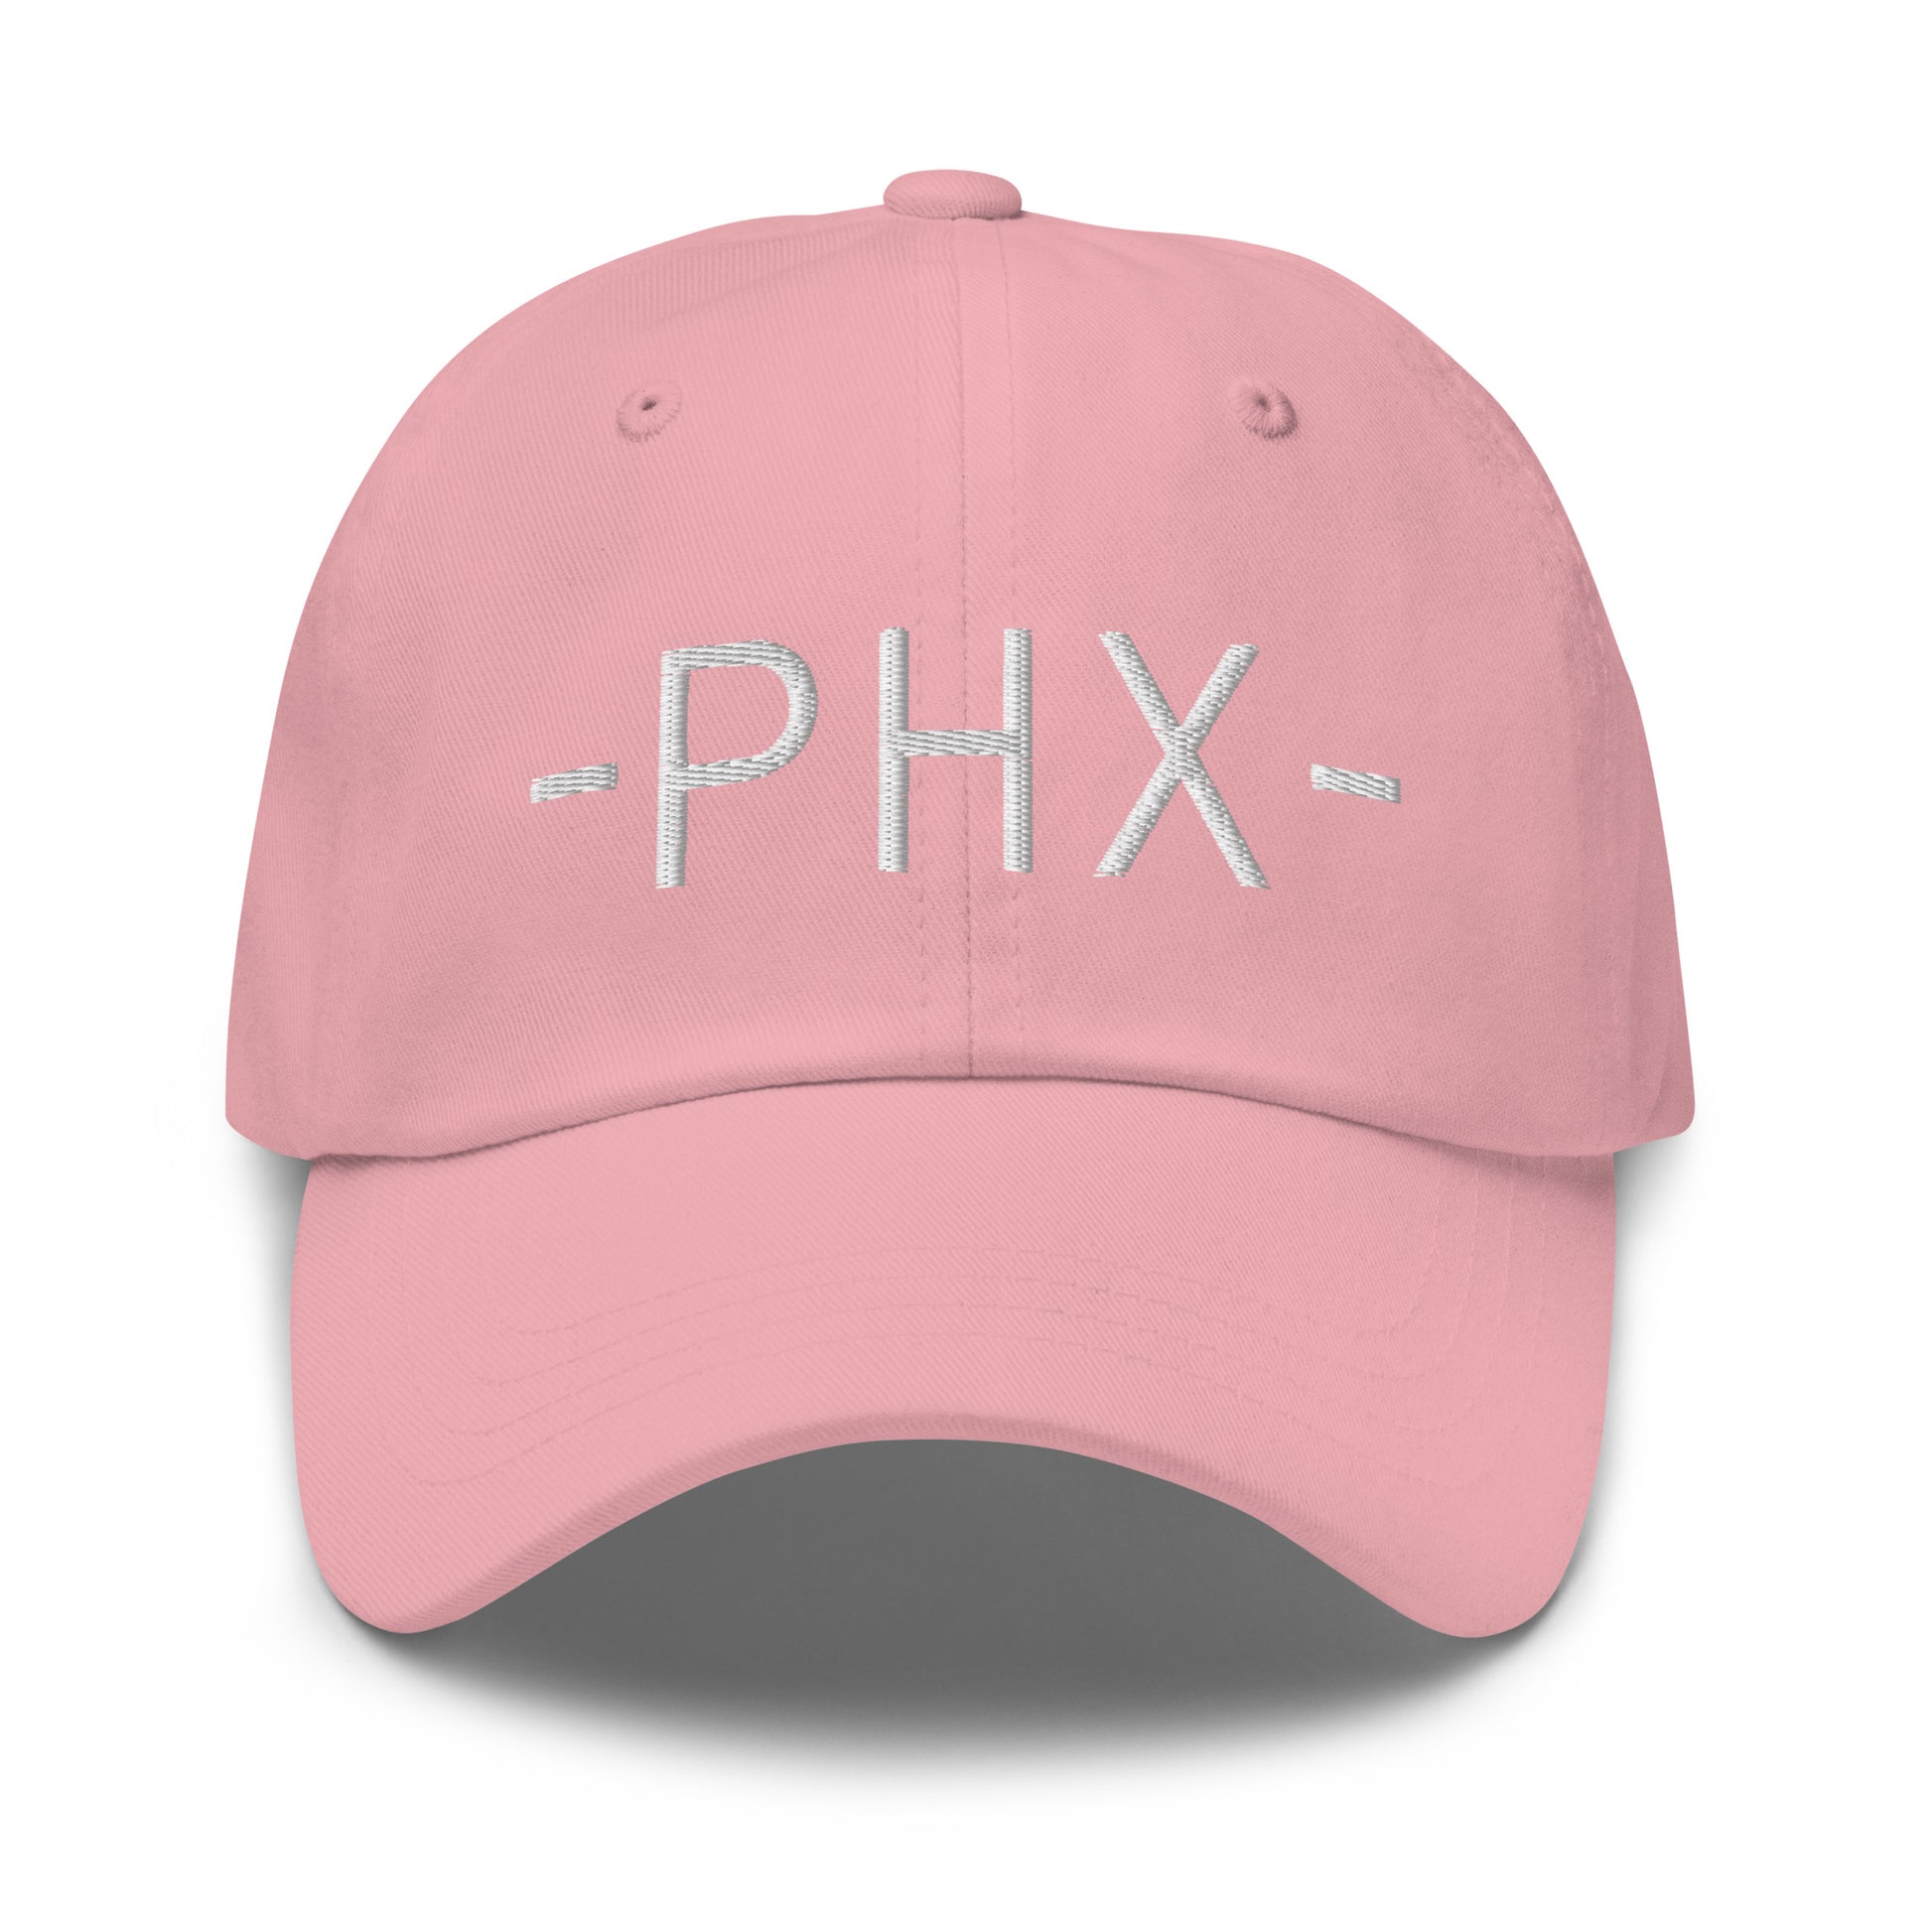 Souvenir Baseball Cap - White • PHX Phoenix • YHM Designs - Image 25